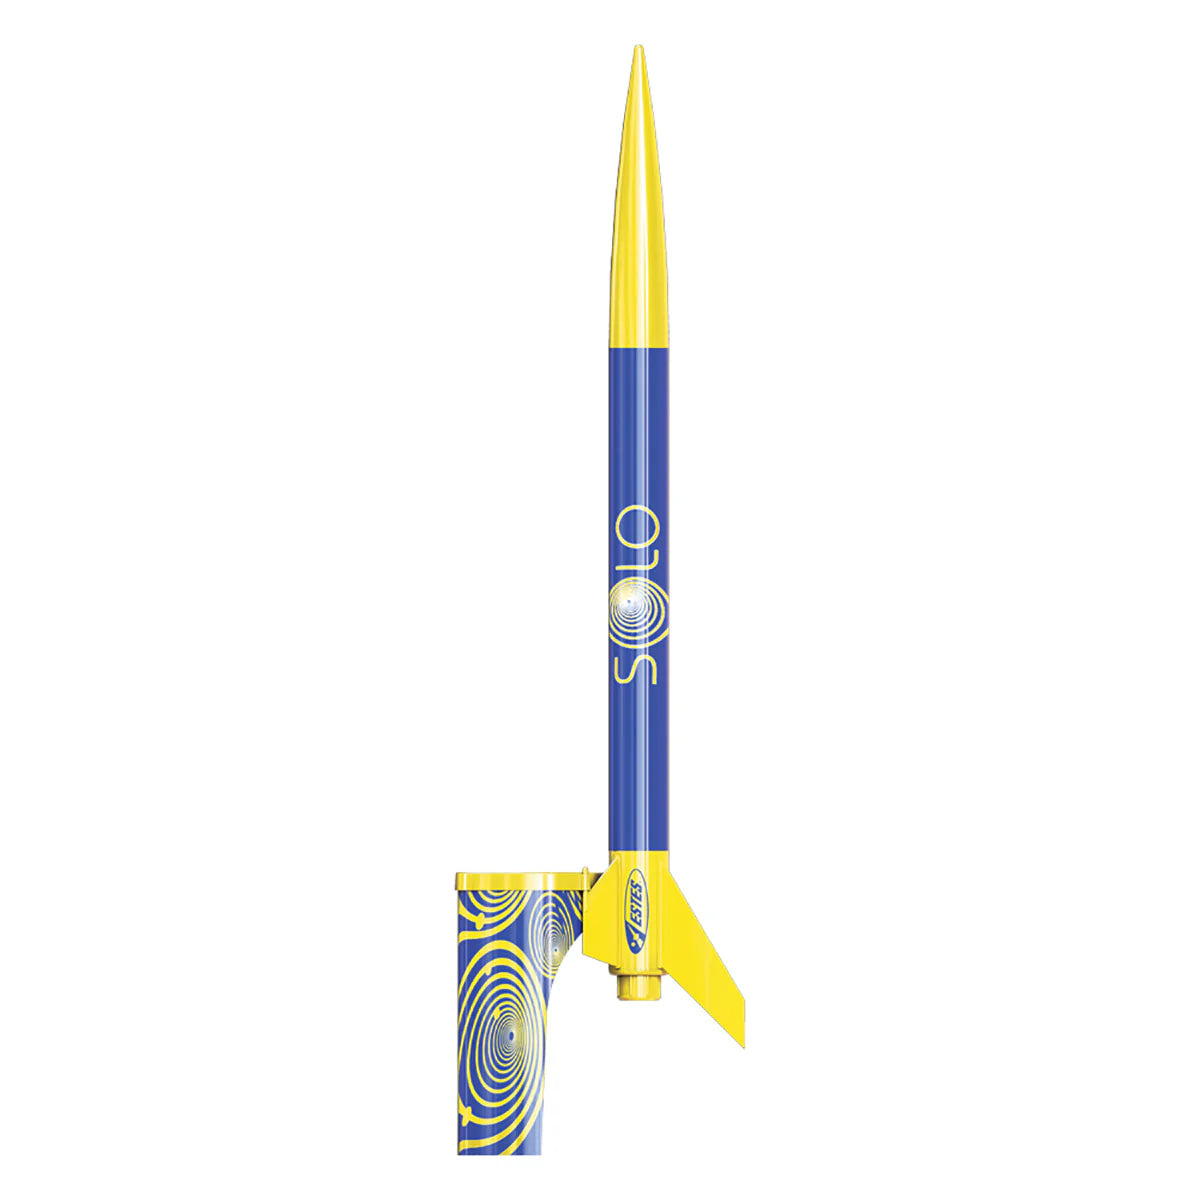 Estes 7288 - Beginner - Solo Rocket Kit